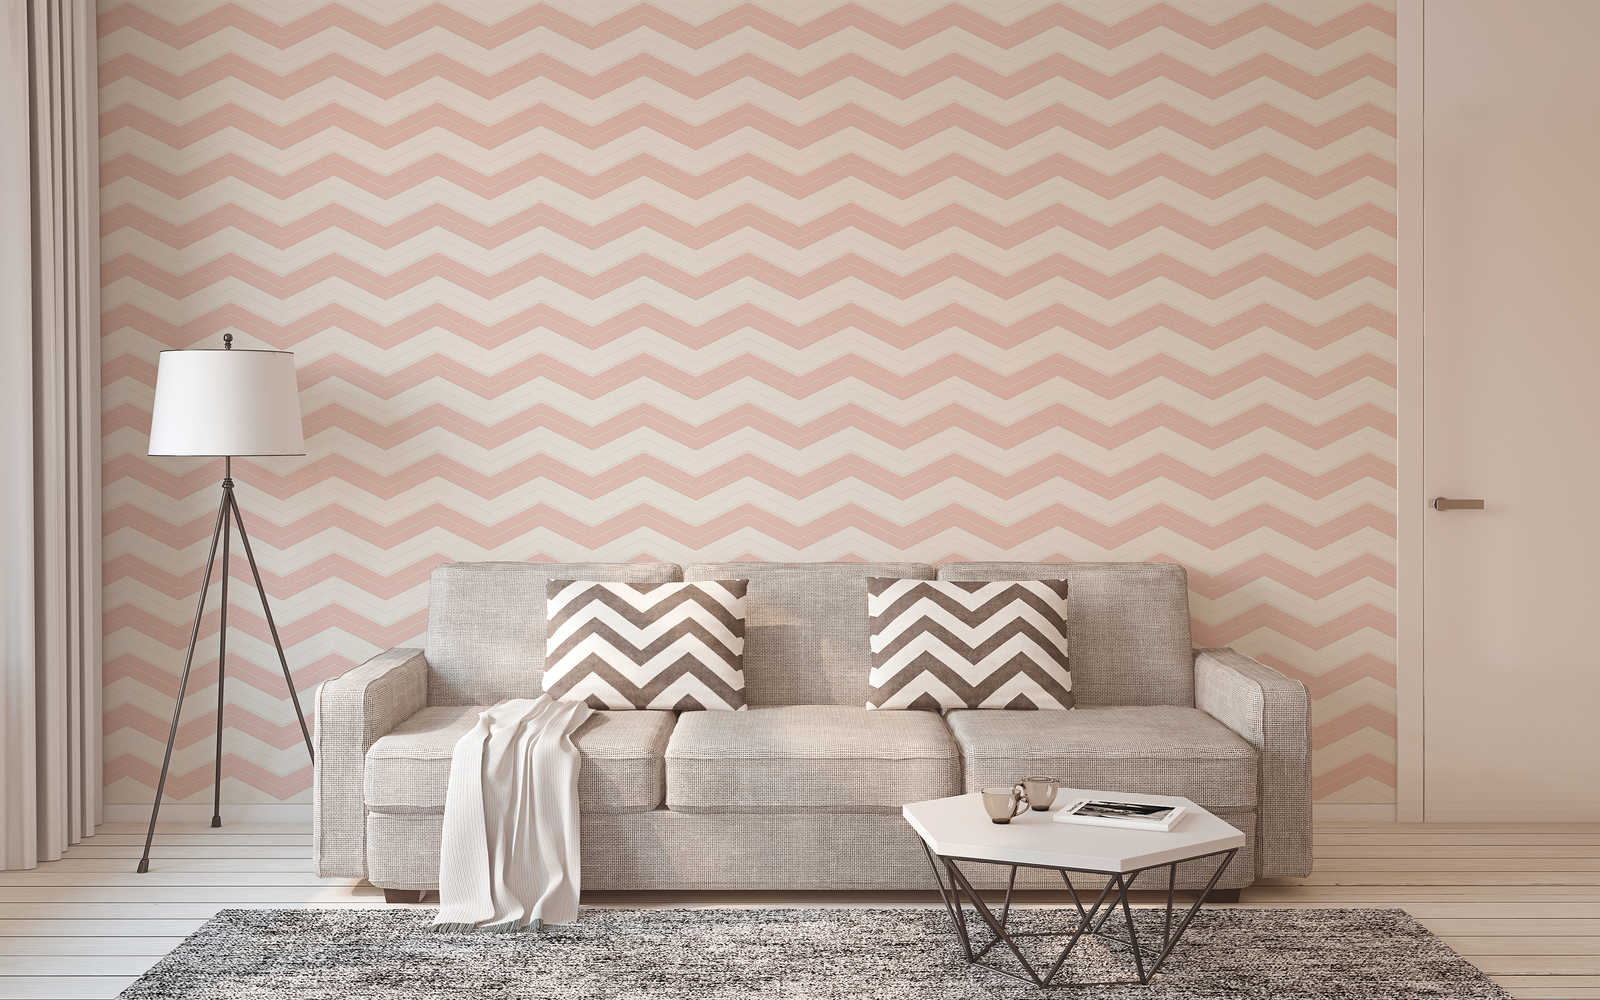             Papier peint à rayures transversales avec lignes en zigzag - rose, blanc
        